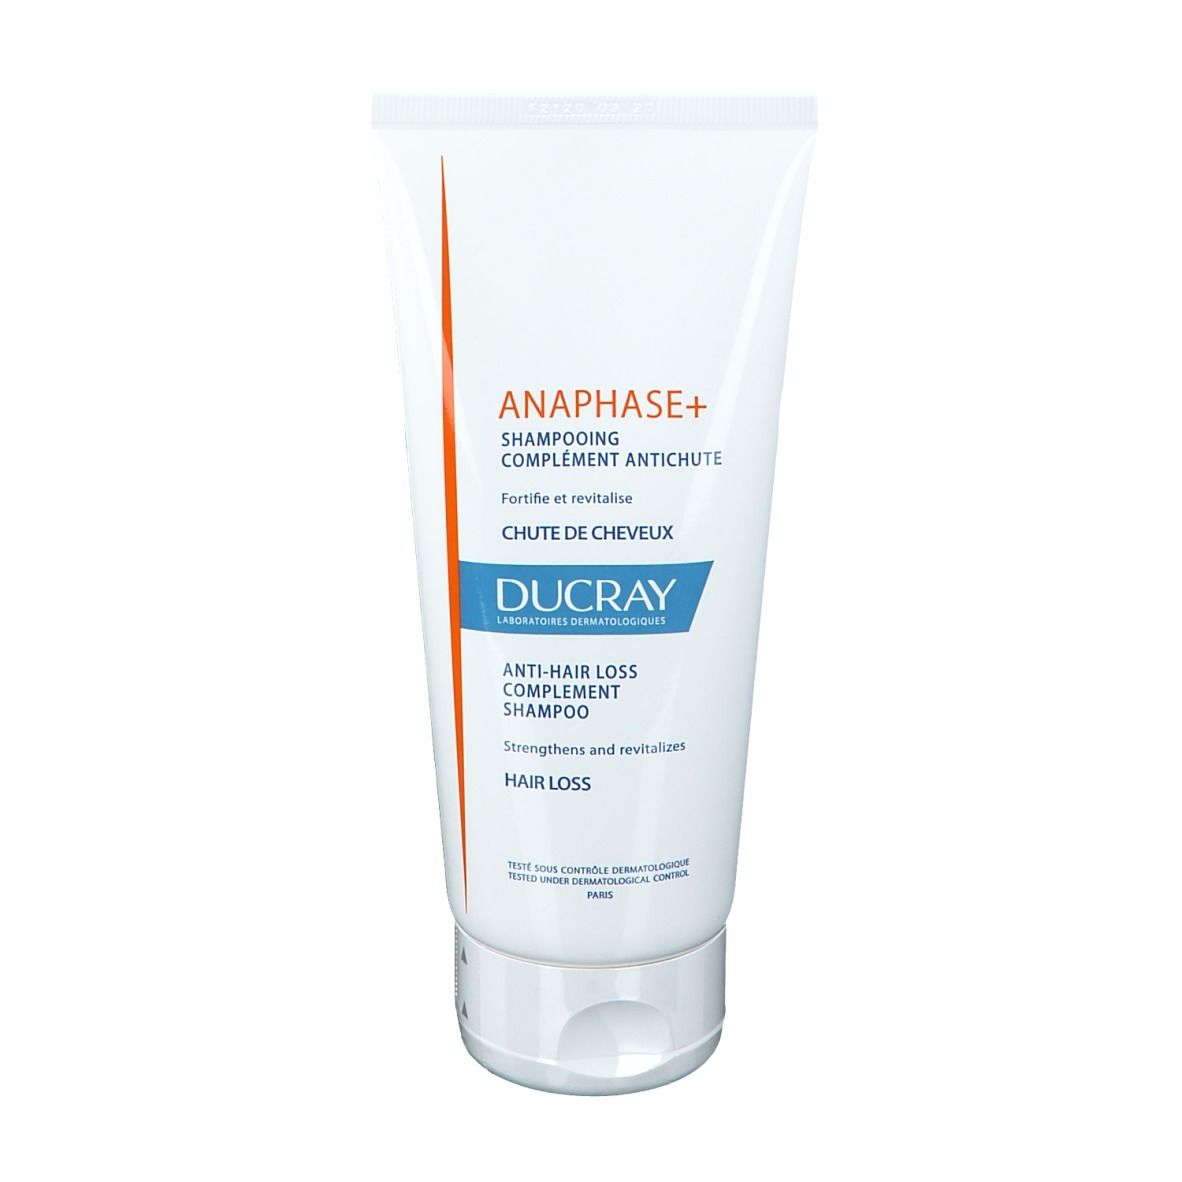  DUCRAY Anaphase+ Shampoo